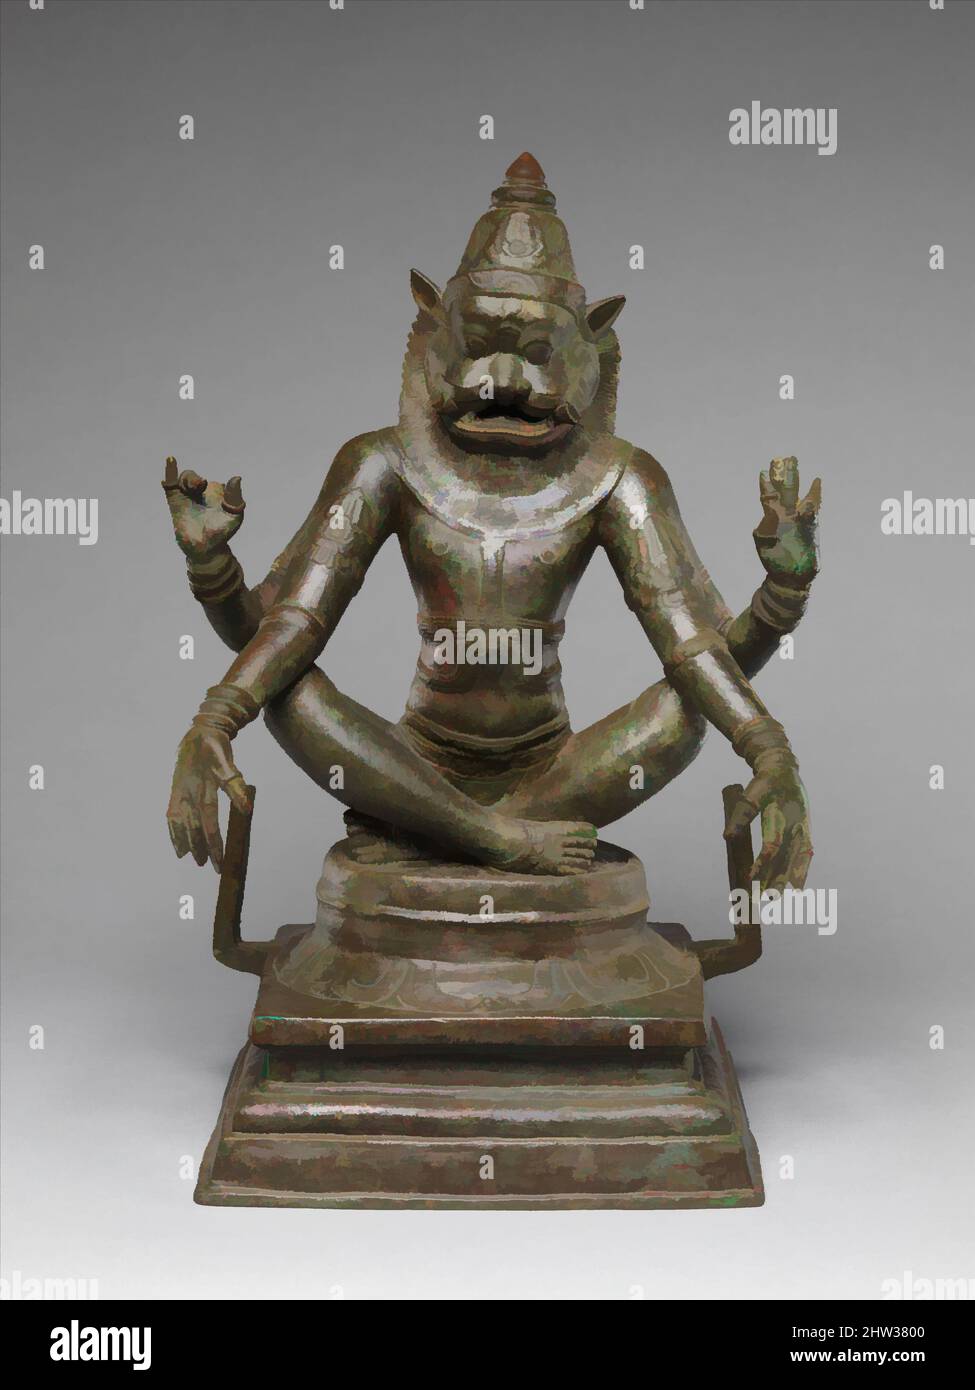 Kunst inspiriert von Yoga Narasimha, Vishnus Mensch-Löwe-Menschwerdung, Chola-Periode (880–1279), 12. Jahrhundert, Indien (Tamil Nadu), Kupferlegierung, H. 18 3/4 (47,6 cm); W. 13 Zoll (33 cm); D. 9 1/2 Zoll (24,1 cm), Skulptur, Narasimha war ein Avatar von Vishnu, der auf der Erde erschien, um das Böse zu töten, Klassische Werke, die von Artotop mit einem Schuss Moderne modernisiert wurden. Formen, Farbe und Wert, auffällige visuelle Wirkung auf Kunst. Emotionen durch Freiheit von Kunstwerken auf zeitgemäße Weise. Eine zeitlose Botschaft, die eine wild kreative neue Richtung verfolgt. Künstler, die sich dem digitalen Medium zuwenden und die Artotop NFT erschaffen Stockfoto